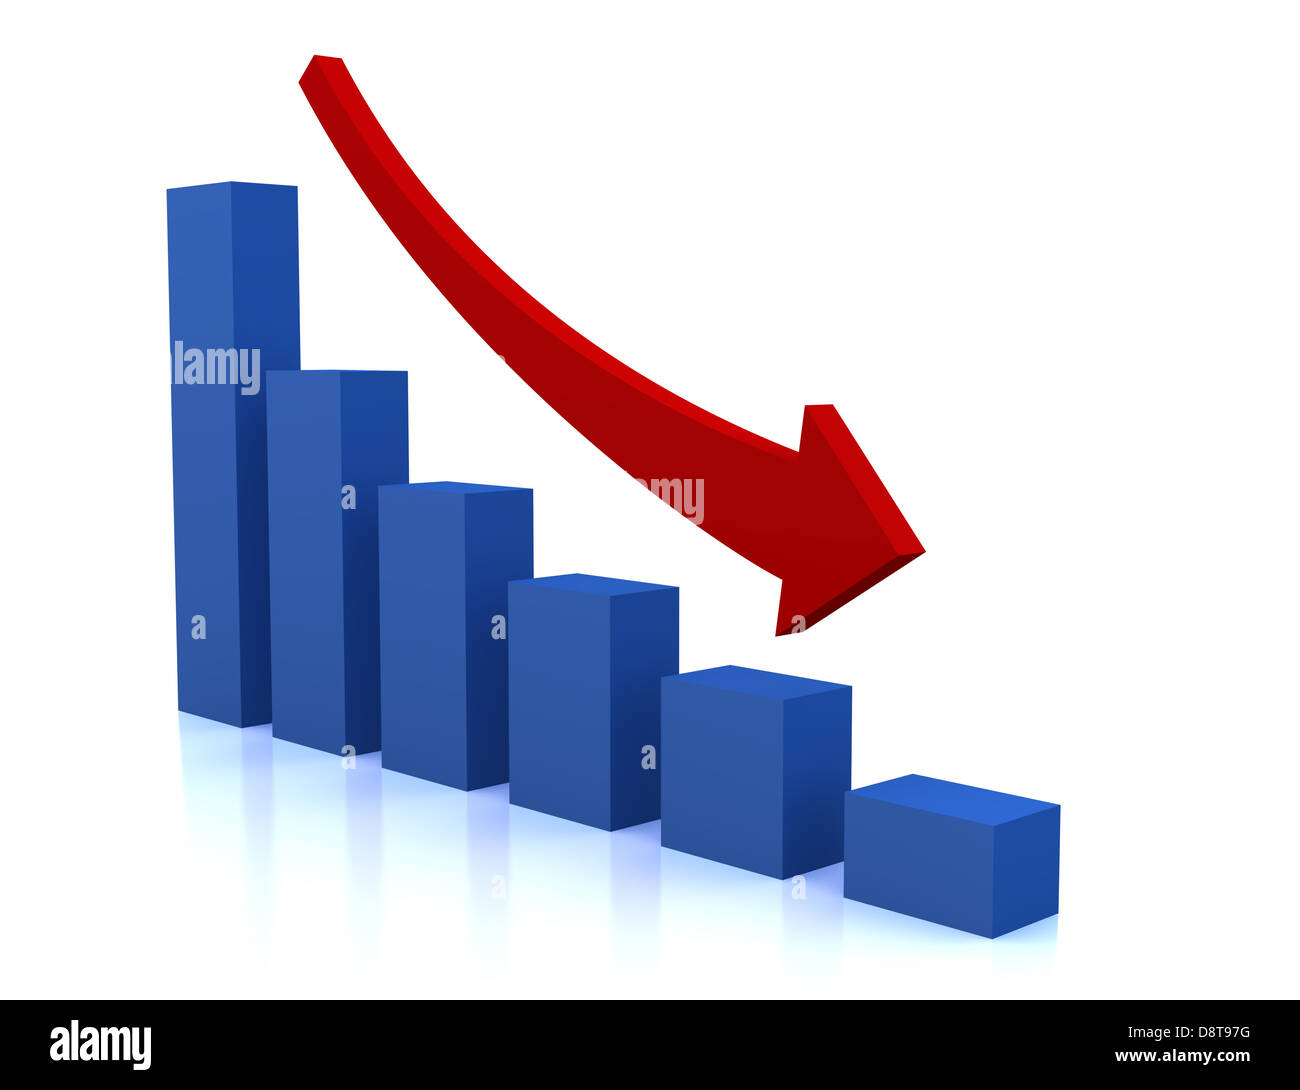 Schéma de déclin d'affaires avec flèche rouge Banque D'Images